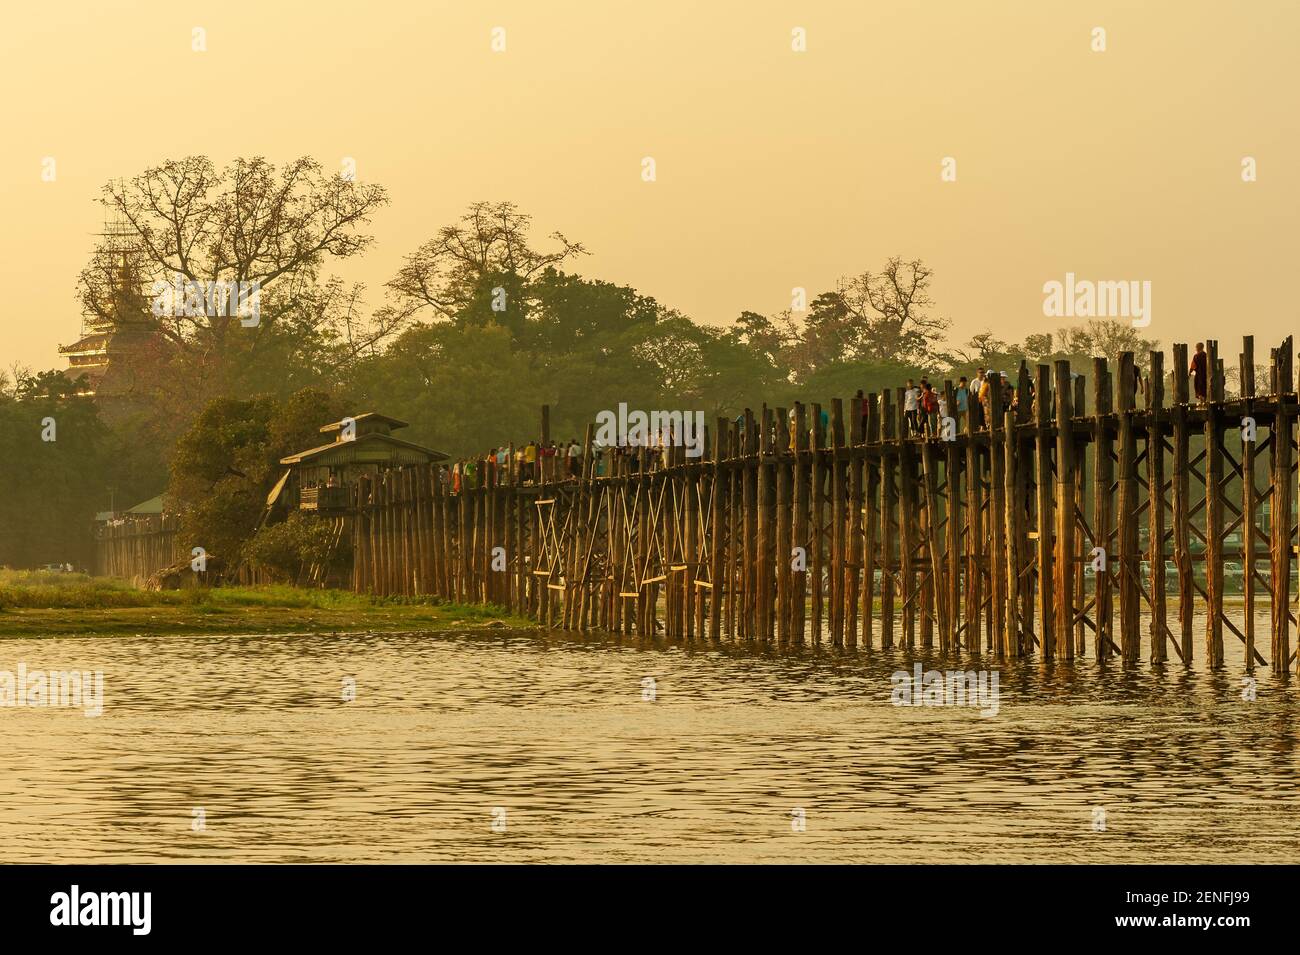 Sunset with u bein bridge in Myanmar, Burma Stock Photo